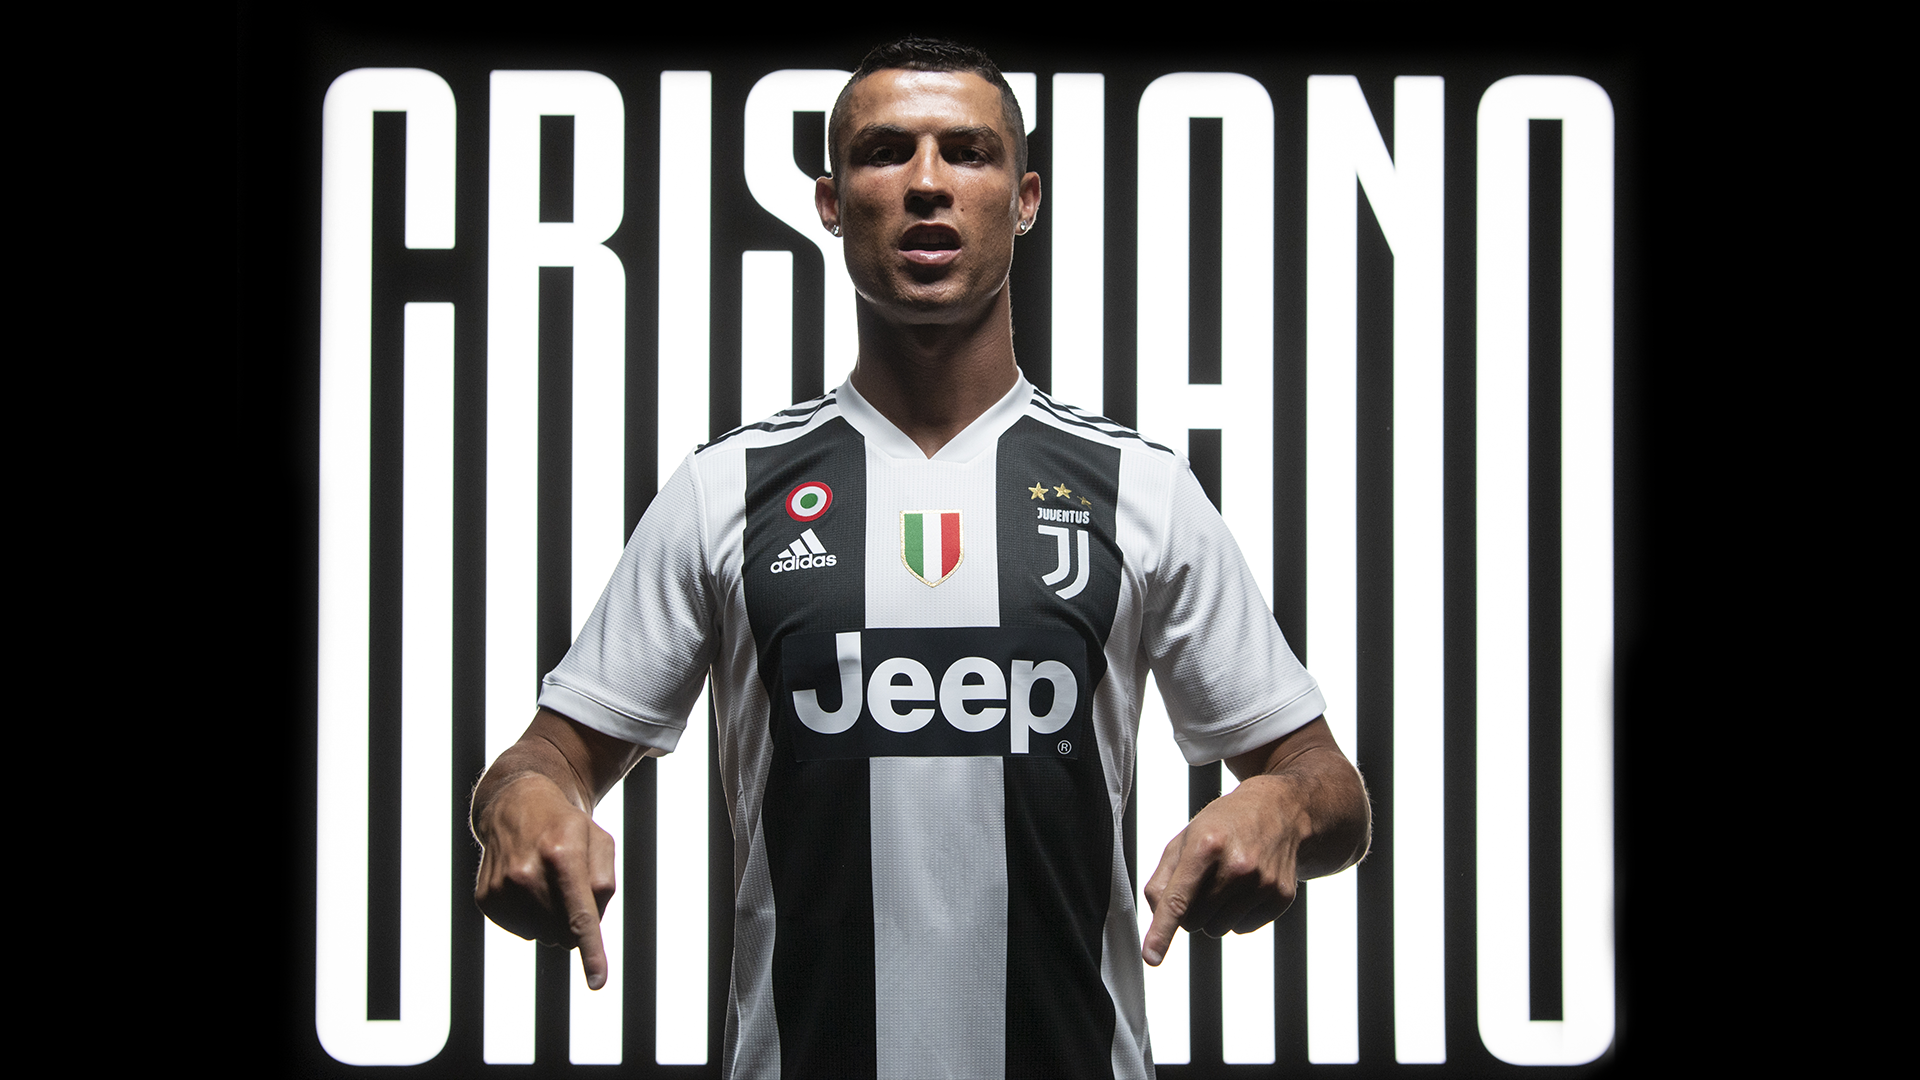 Ronaldo Juventus Poster - HD Wallpaper 